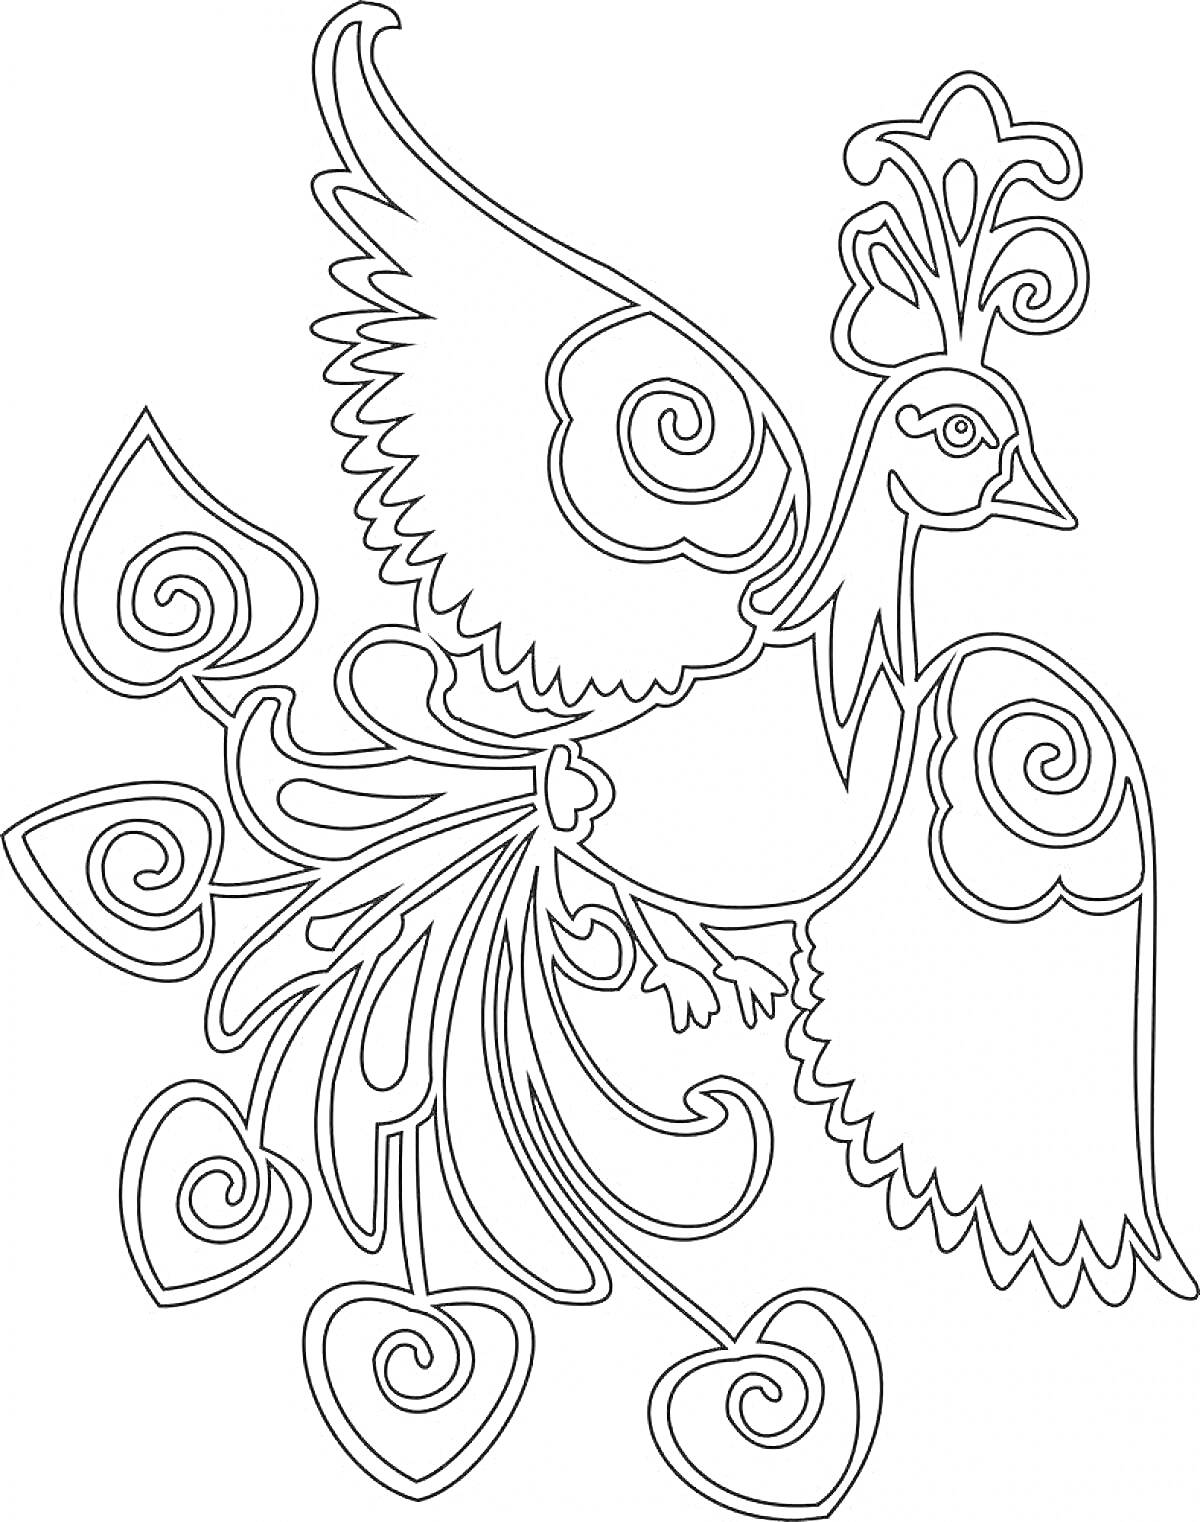 Раскраска Жар-птица с узорными перьями и крыльями, фантазийная птица с большими глазами и завитками на перьях